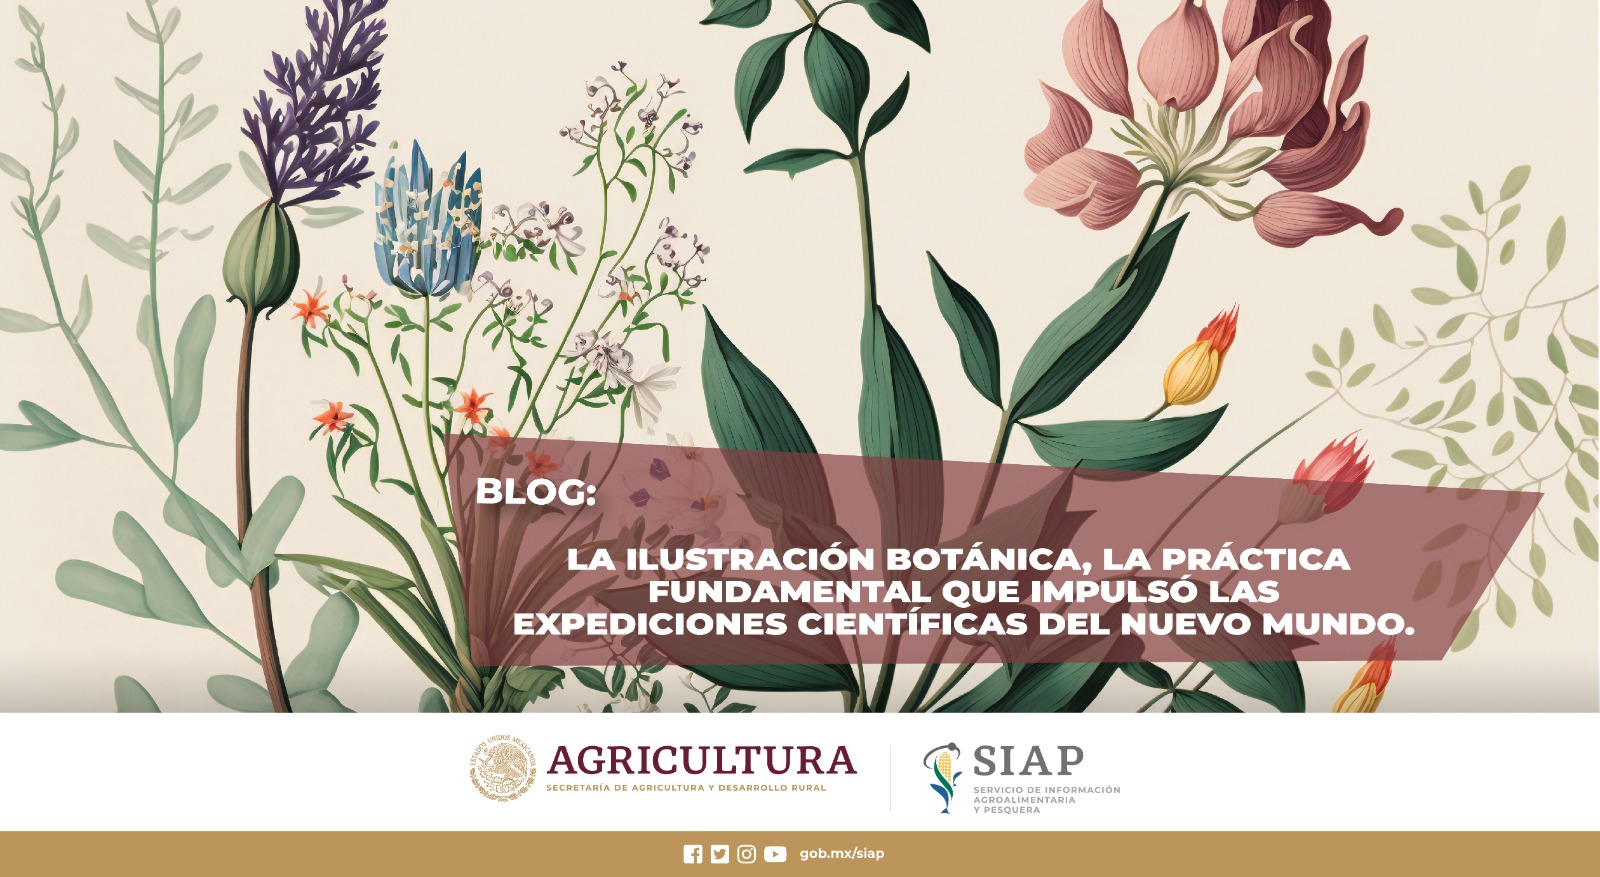 El 18 de mayo, se celebra el Día Internacional de la Ilustración Botánica